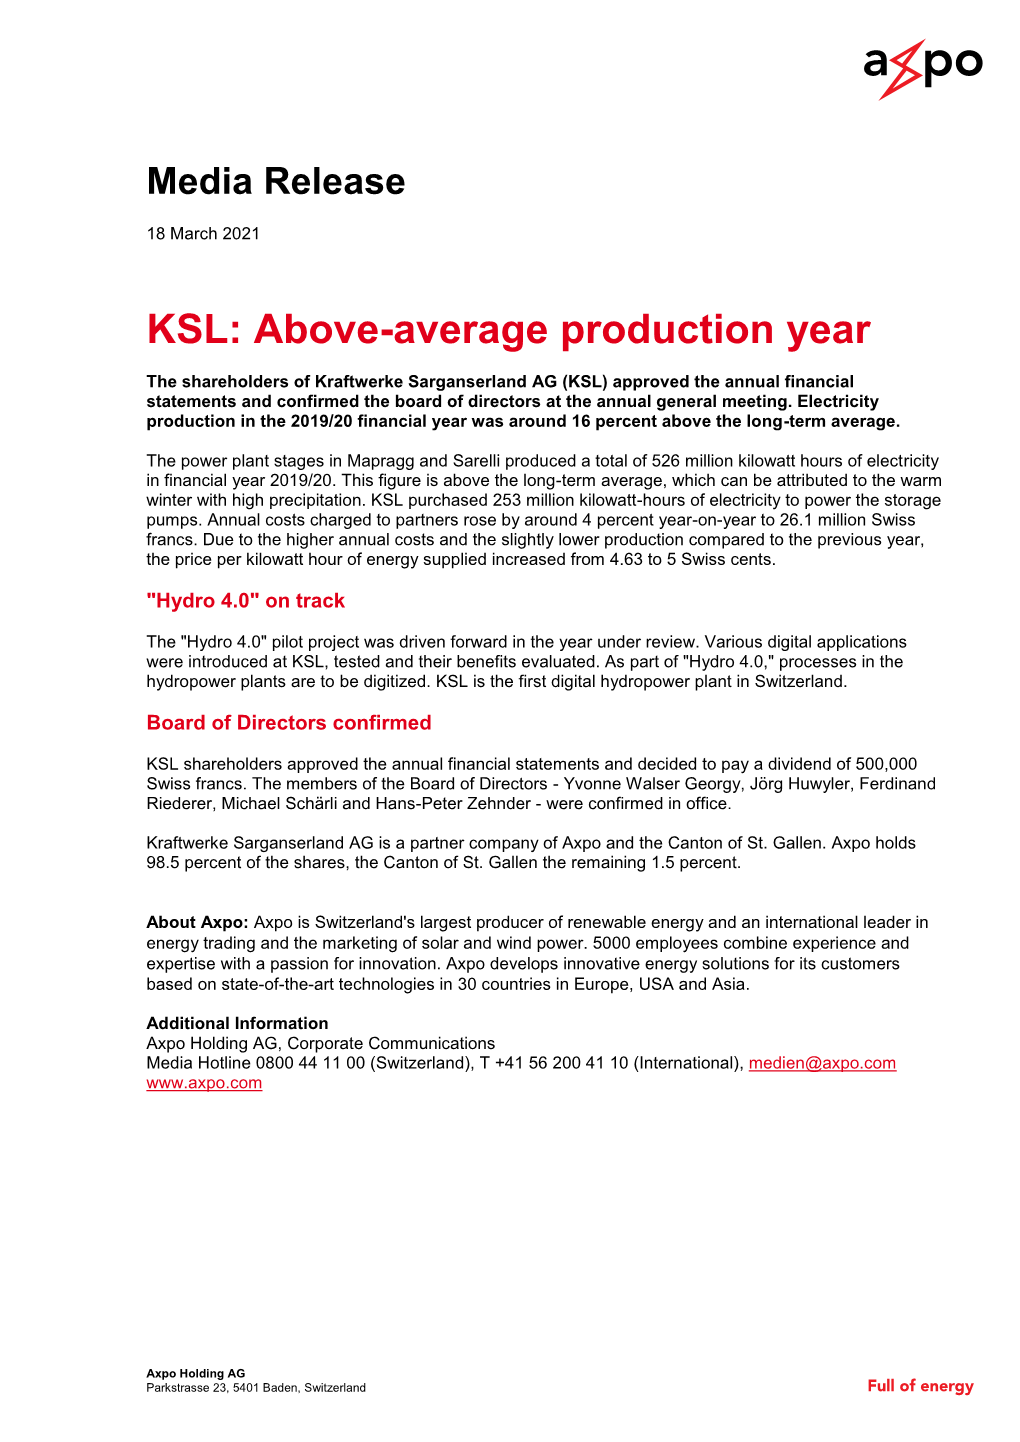 KSL: Above-Average Production Year